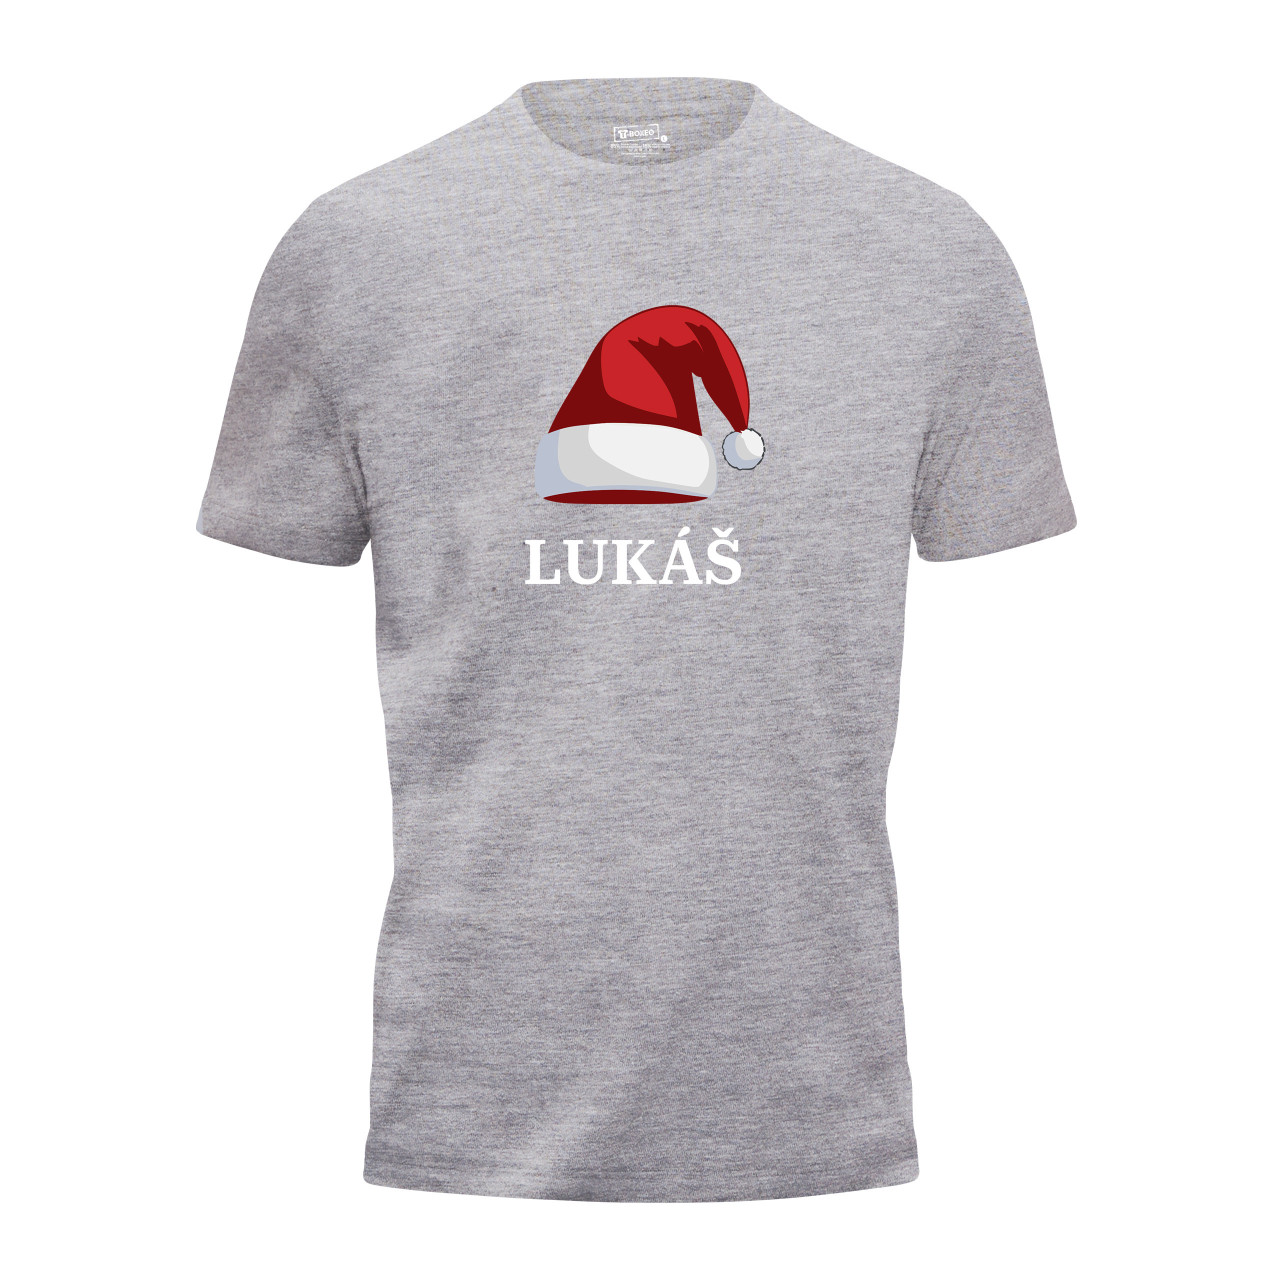 Pánské tričko s potiskem “Vánoční čepice” a jménem